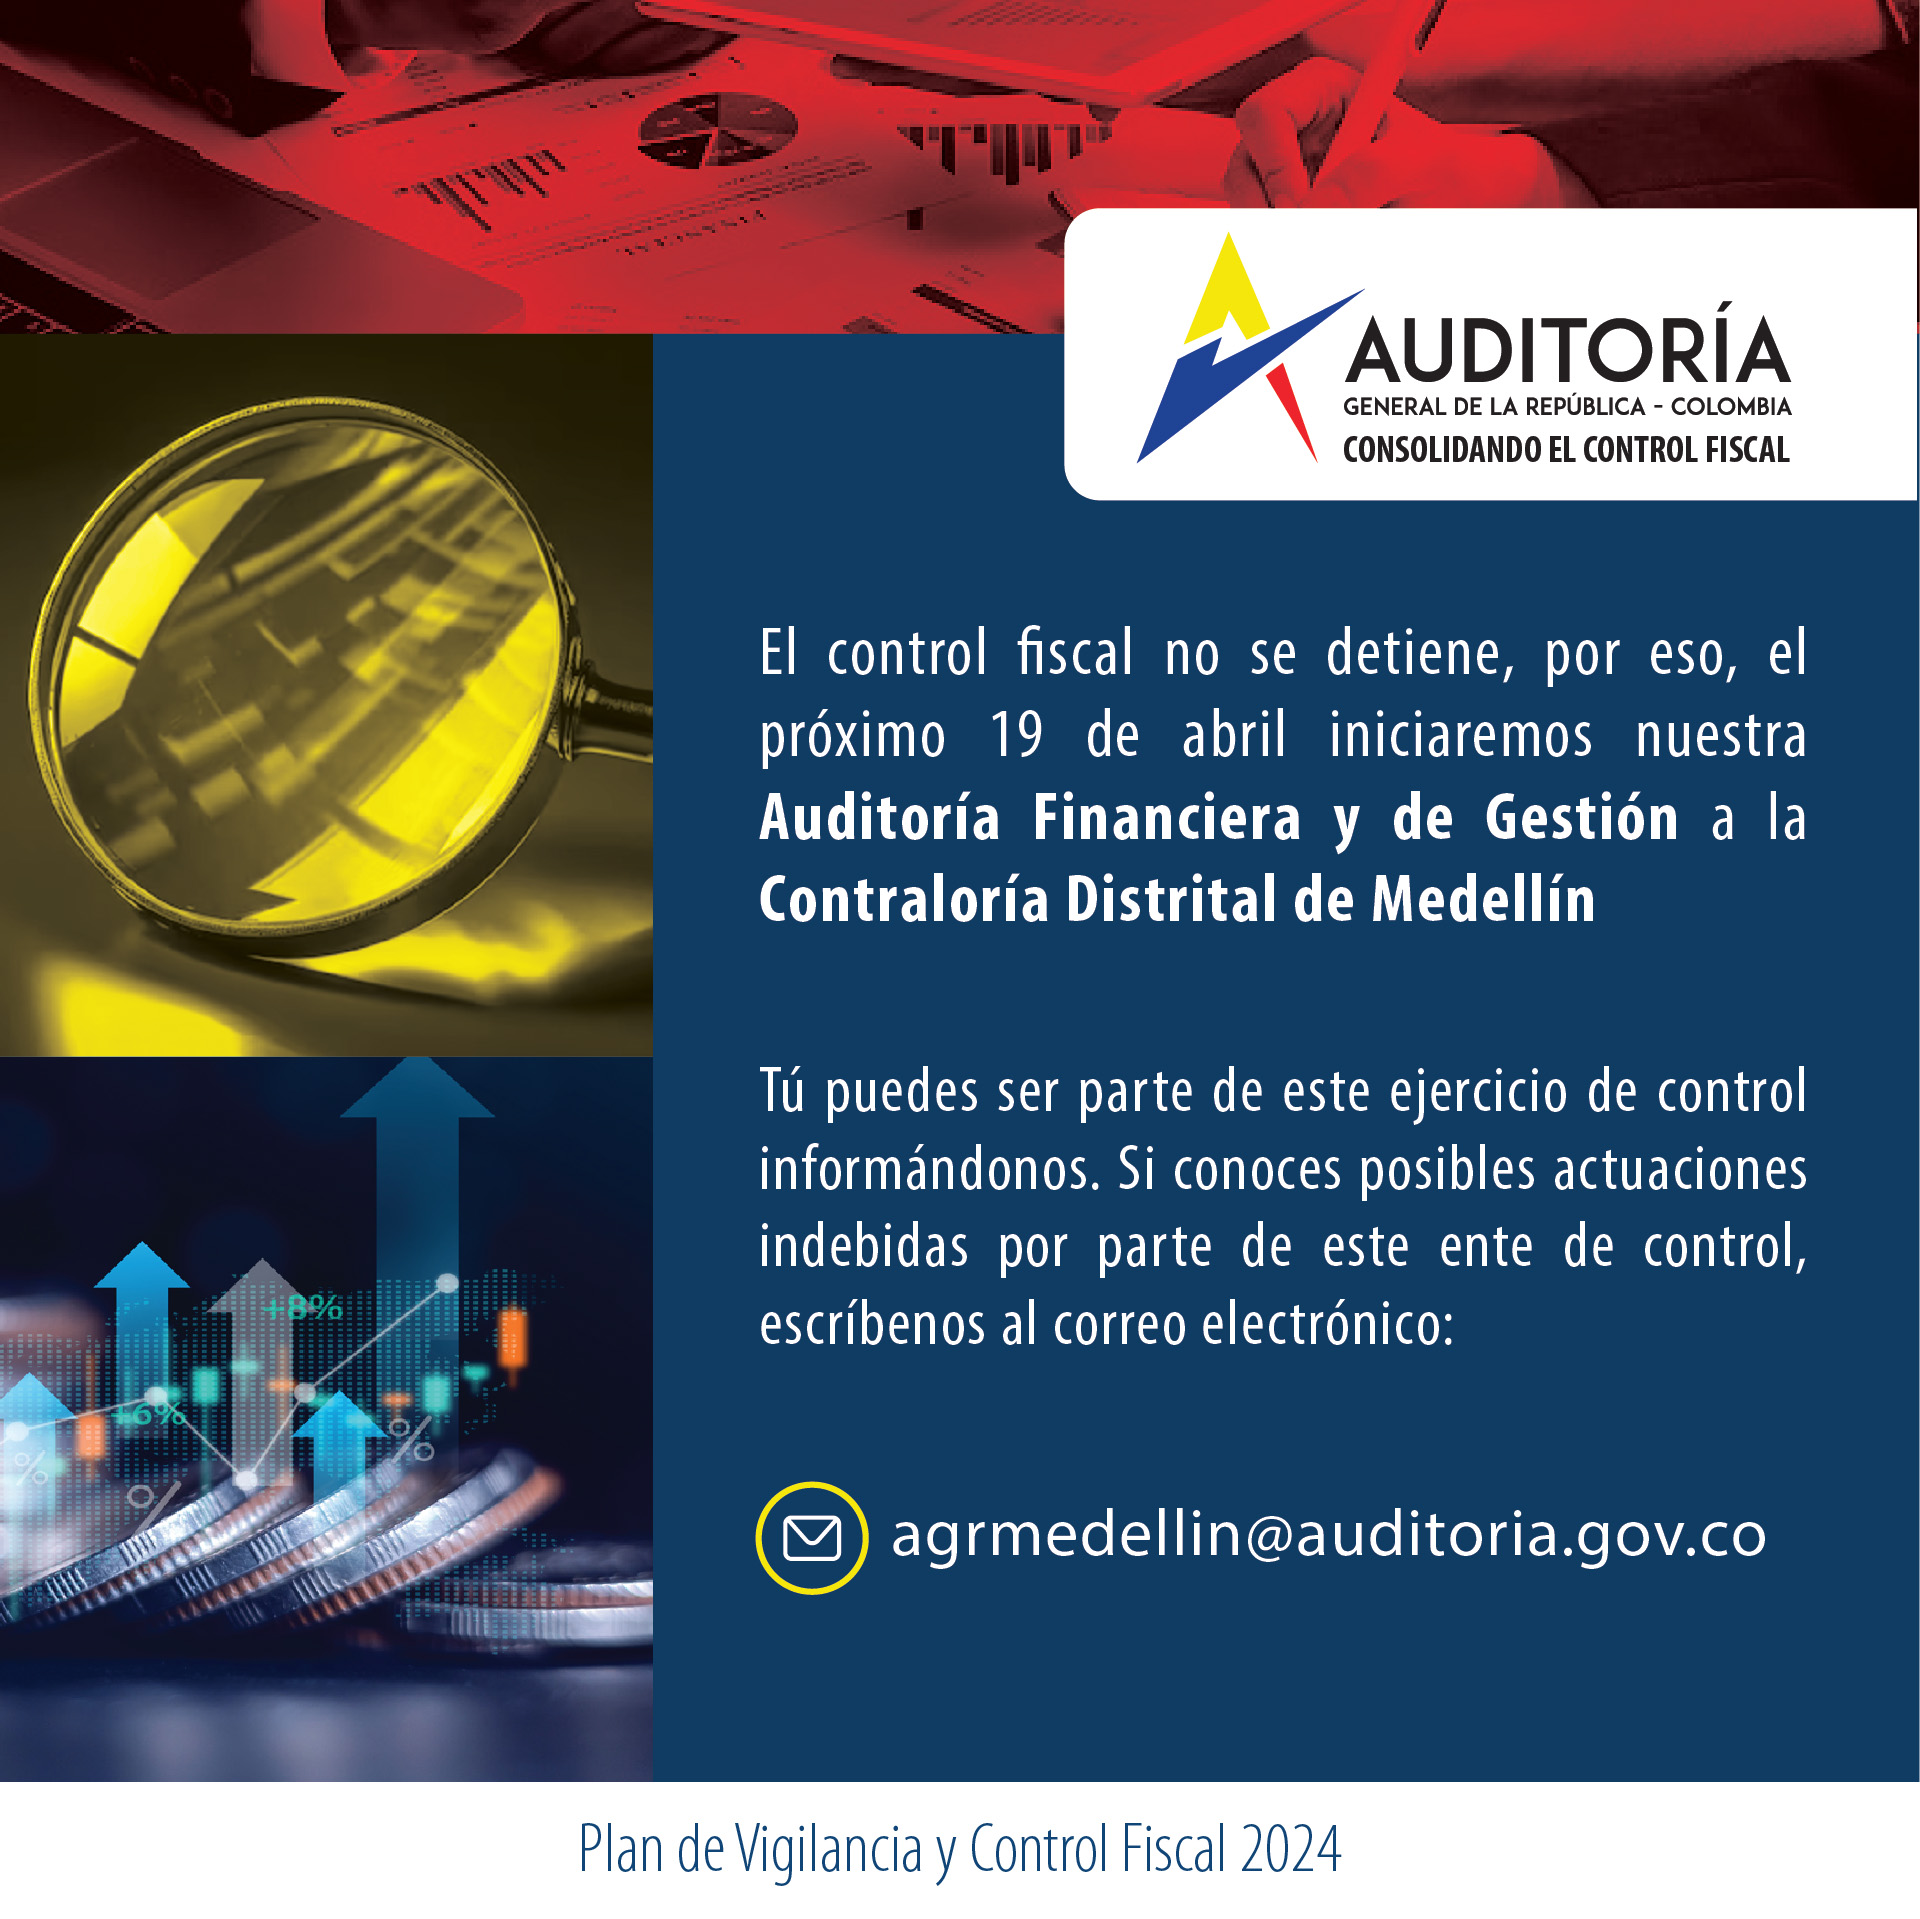 Invitación a ciudadanía a brindar información para Auditoría Financiera y de Gestión a Contraloría de Medellín